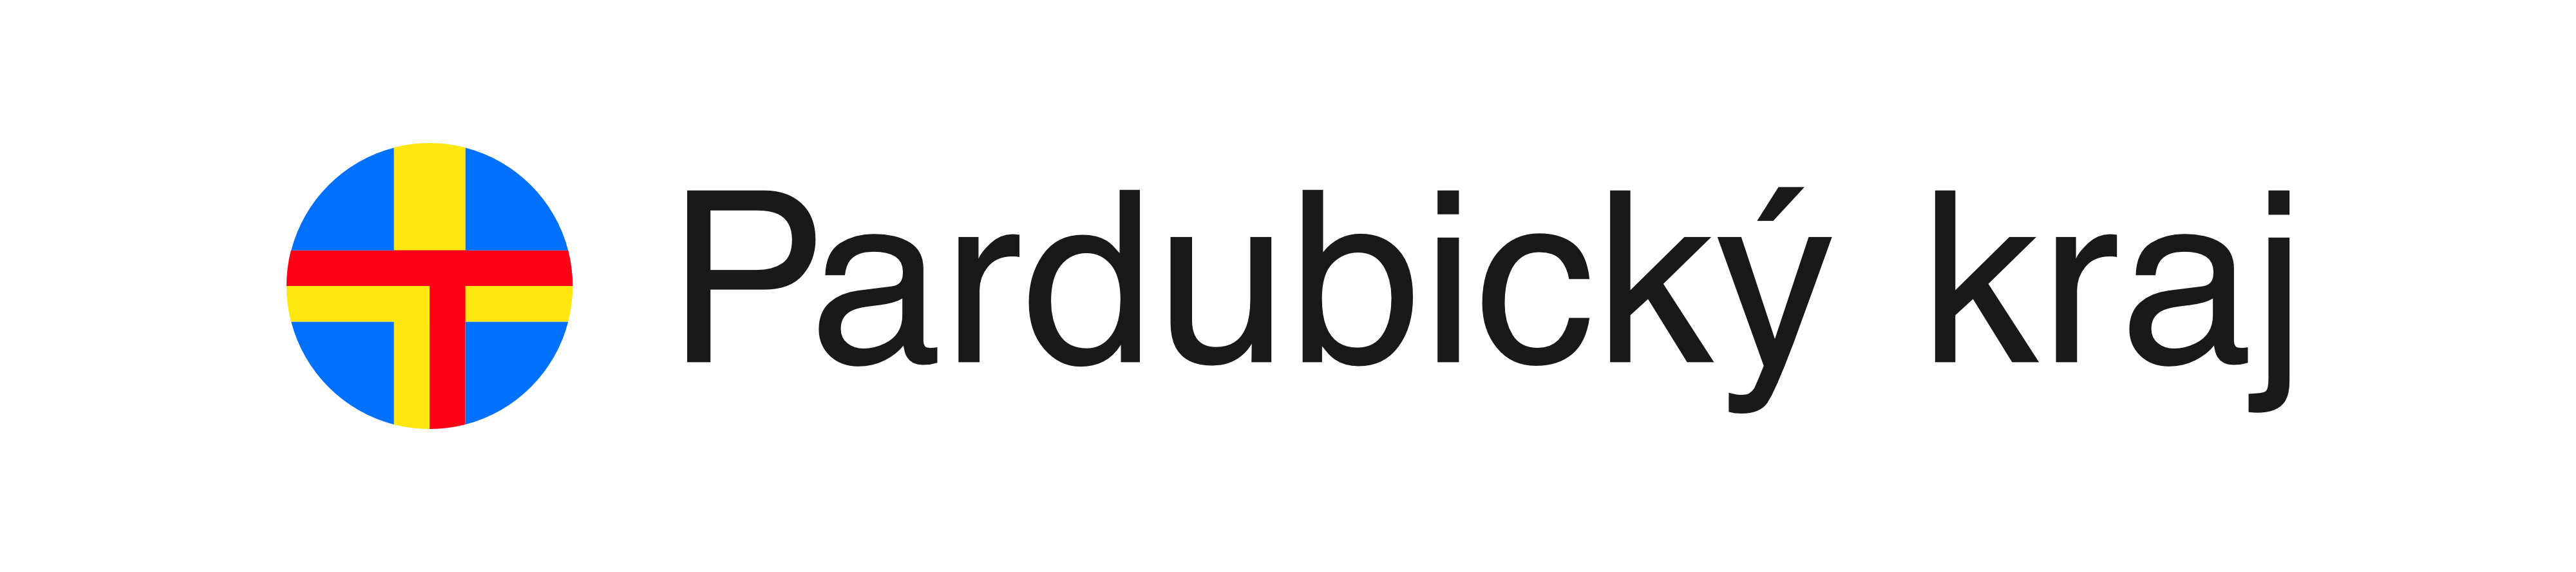 pardubicky-kraj-logo